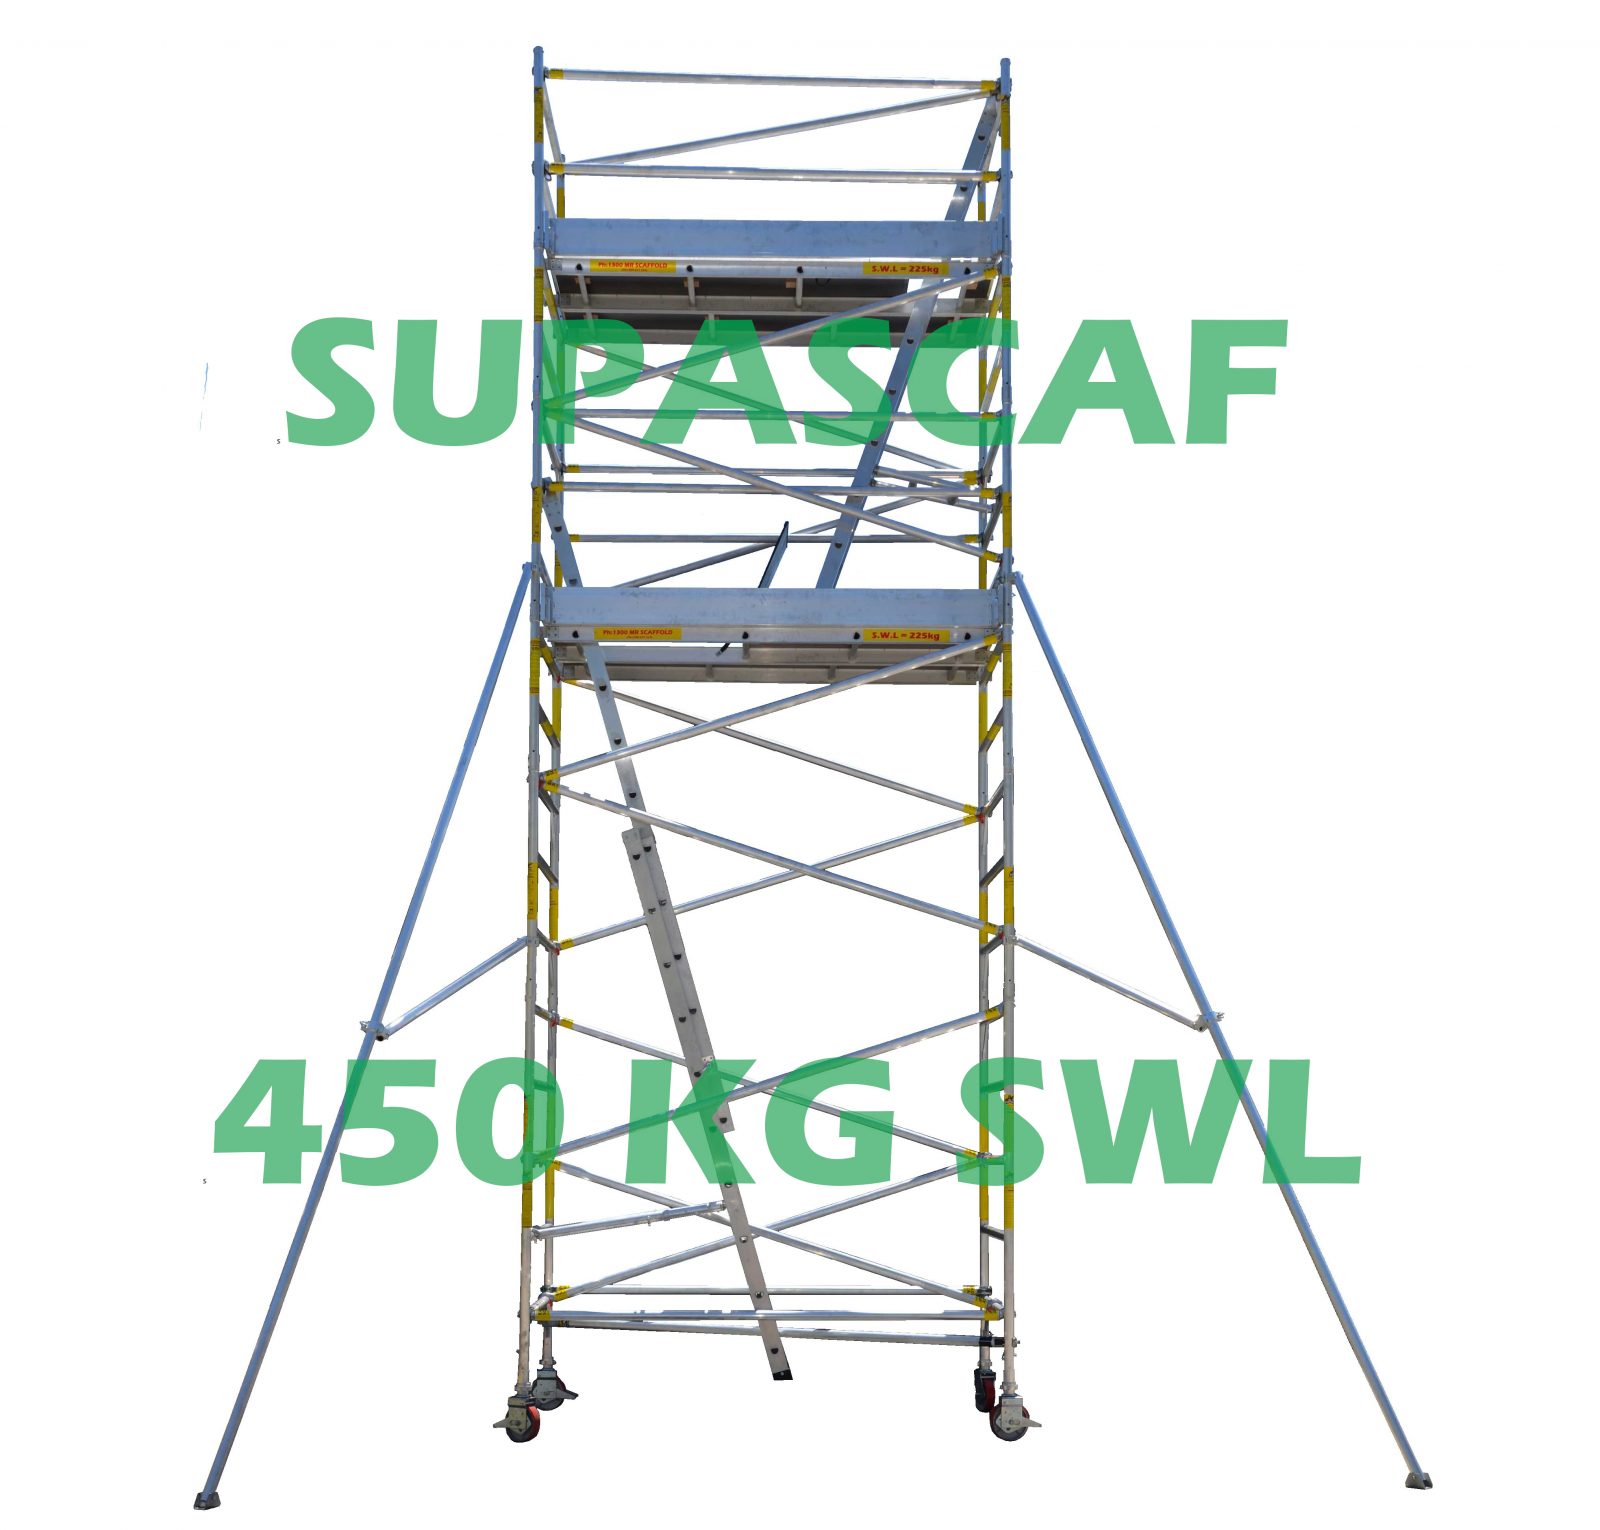 scaffolding sydney